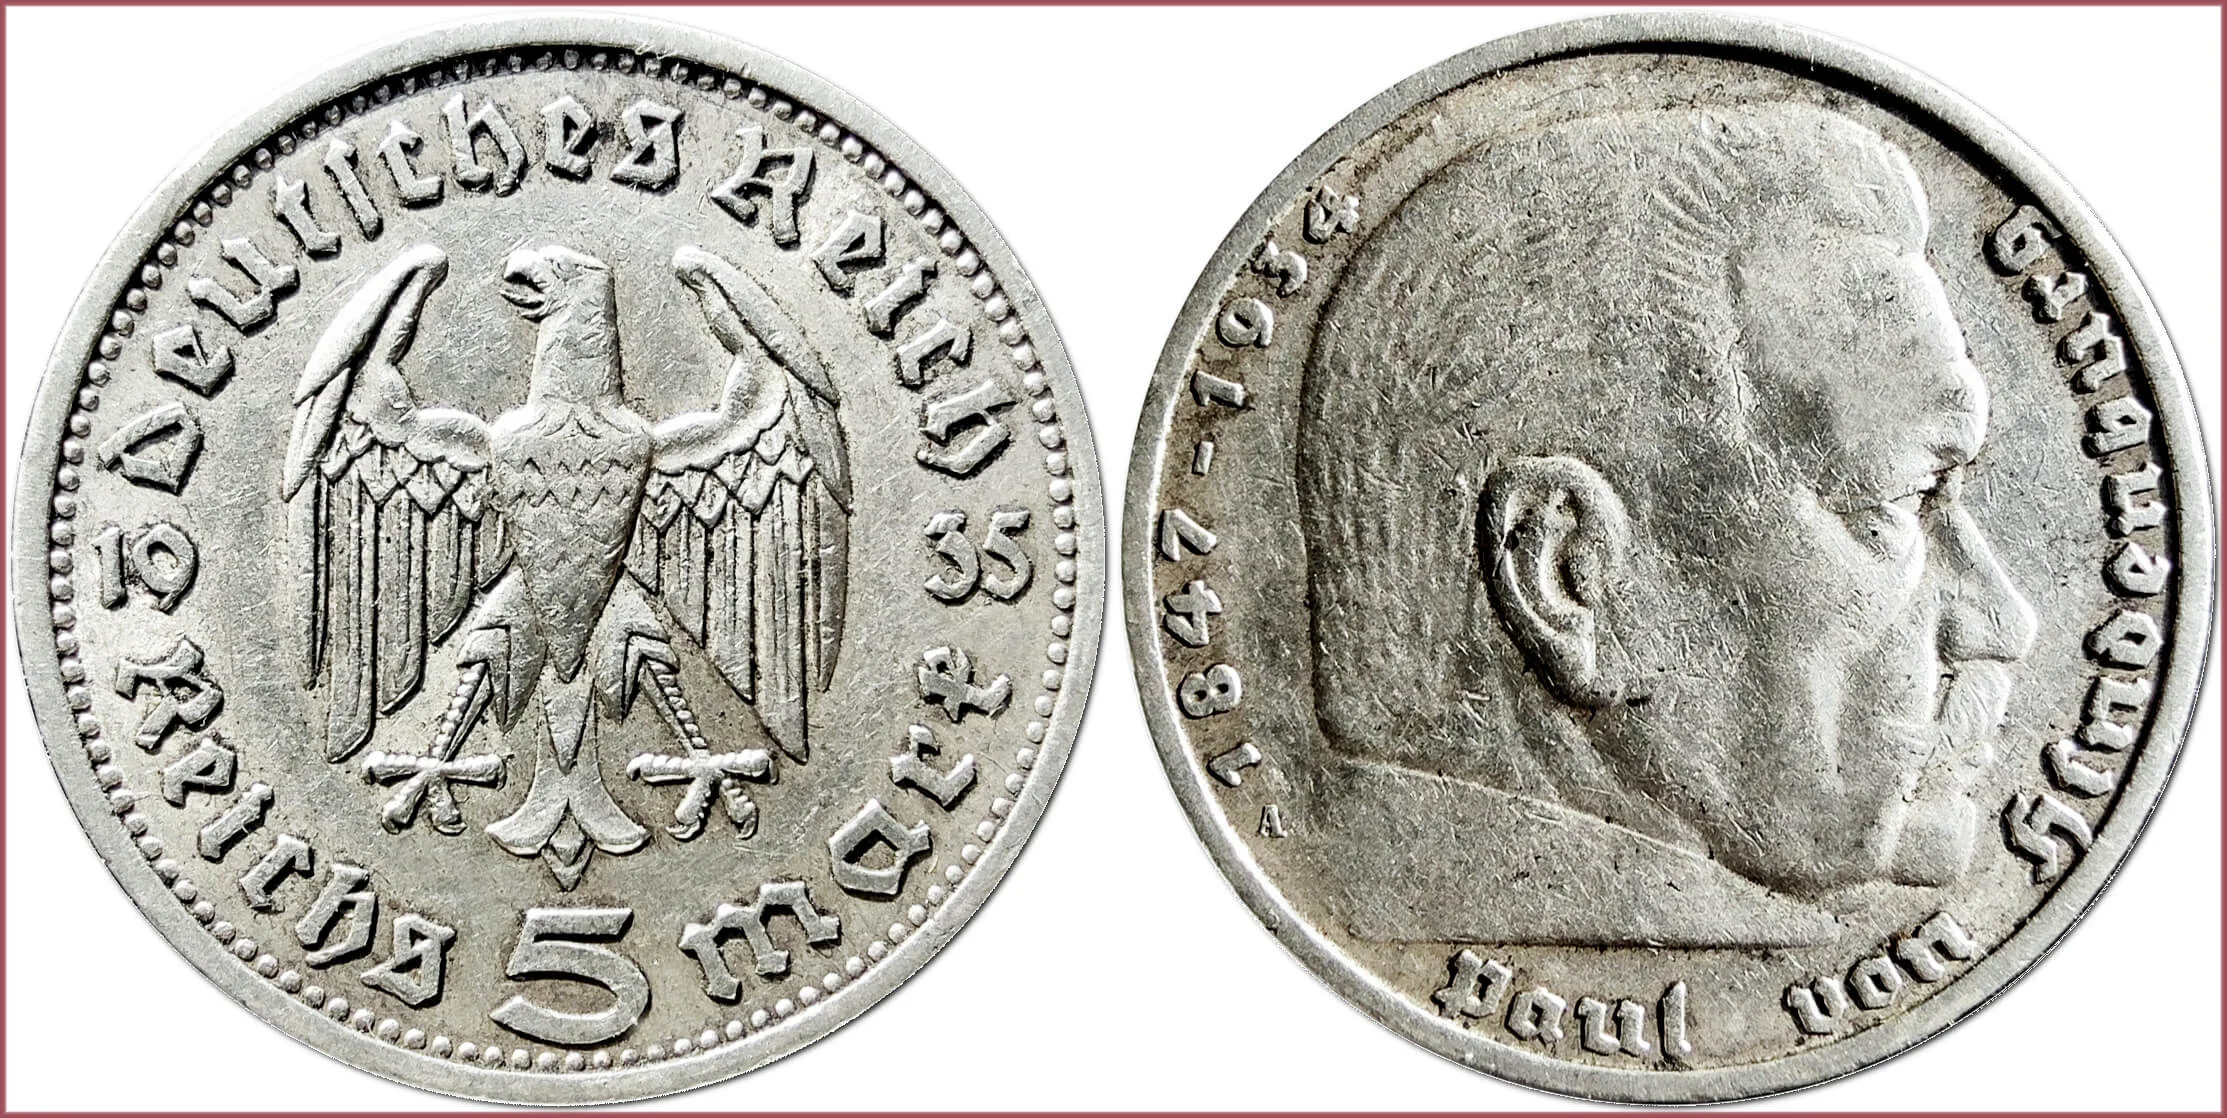 5 reichsmark, 1935: German Reich (Third Reich or Nazi Germany)